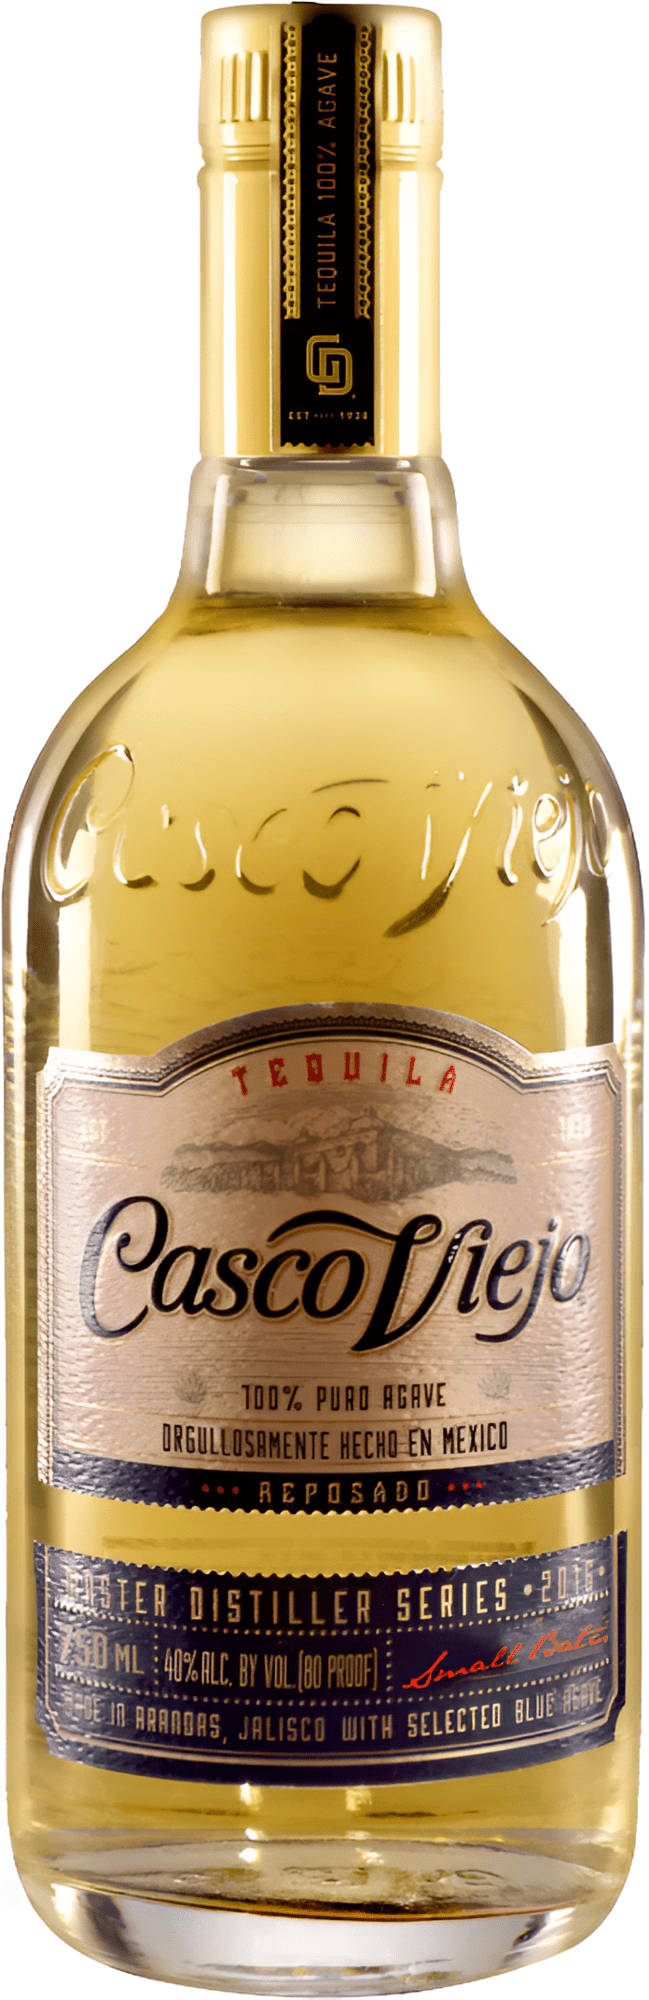 Casco Viejo Reposado Tequila 38% 0,7l (čistá fľaša)